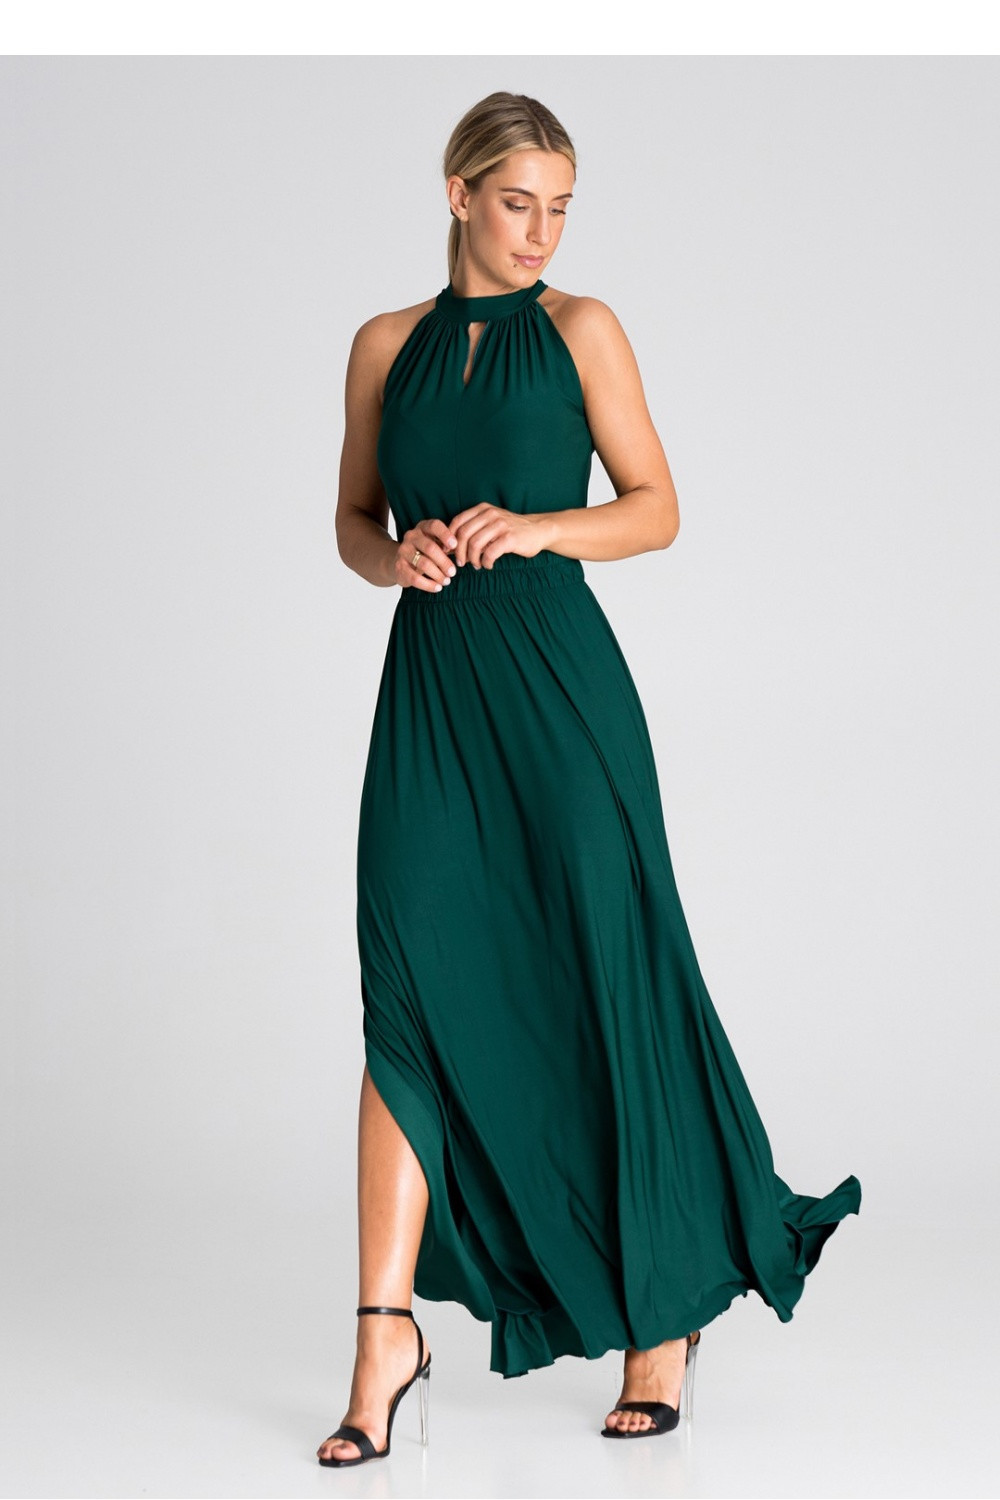 Levně Dámské společenské šaty M945 zelené - Figl M